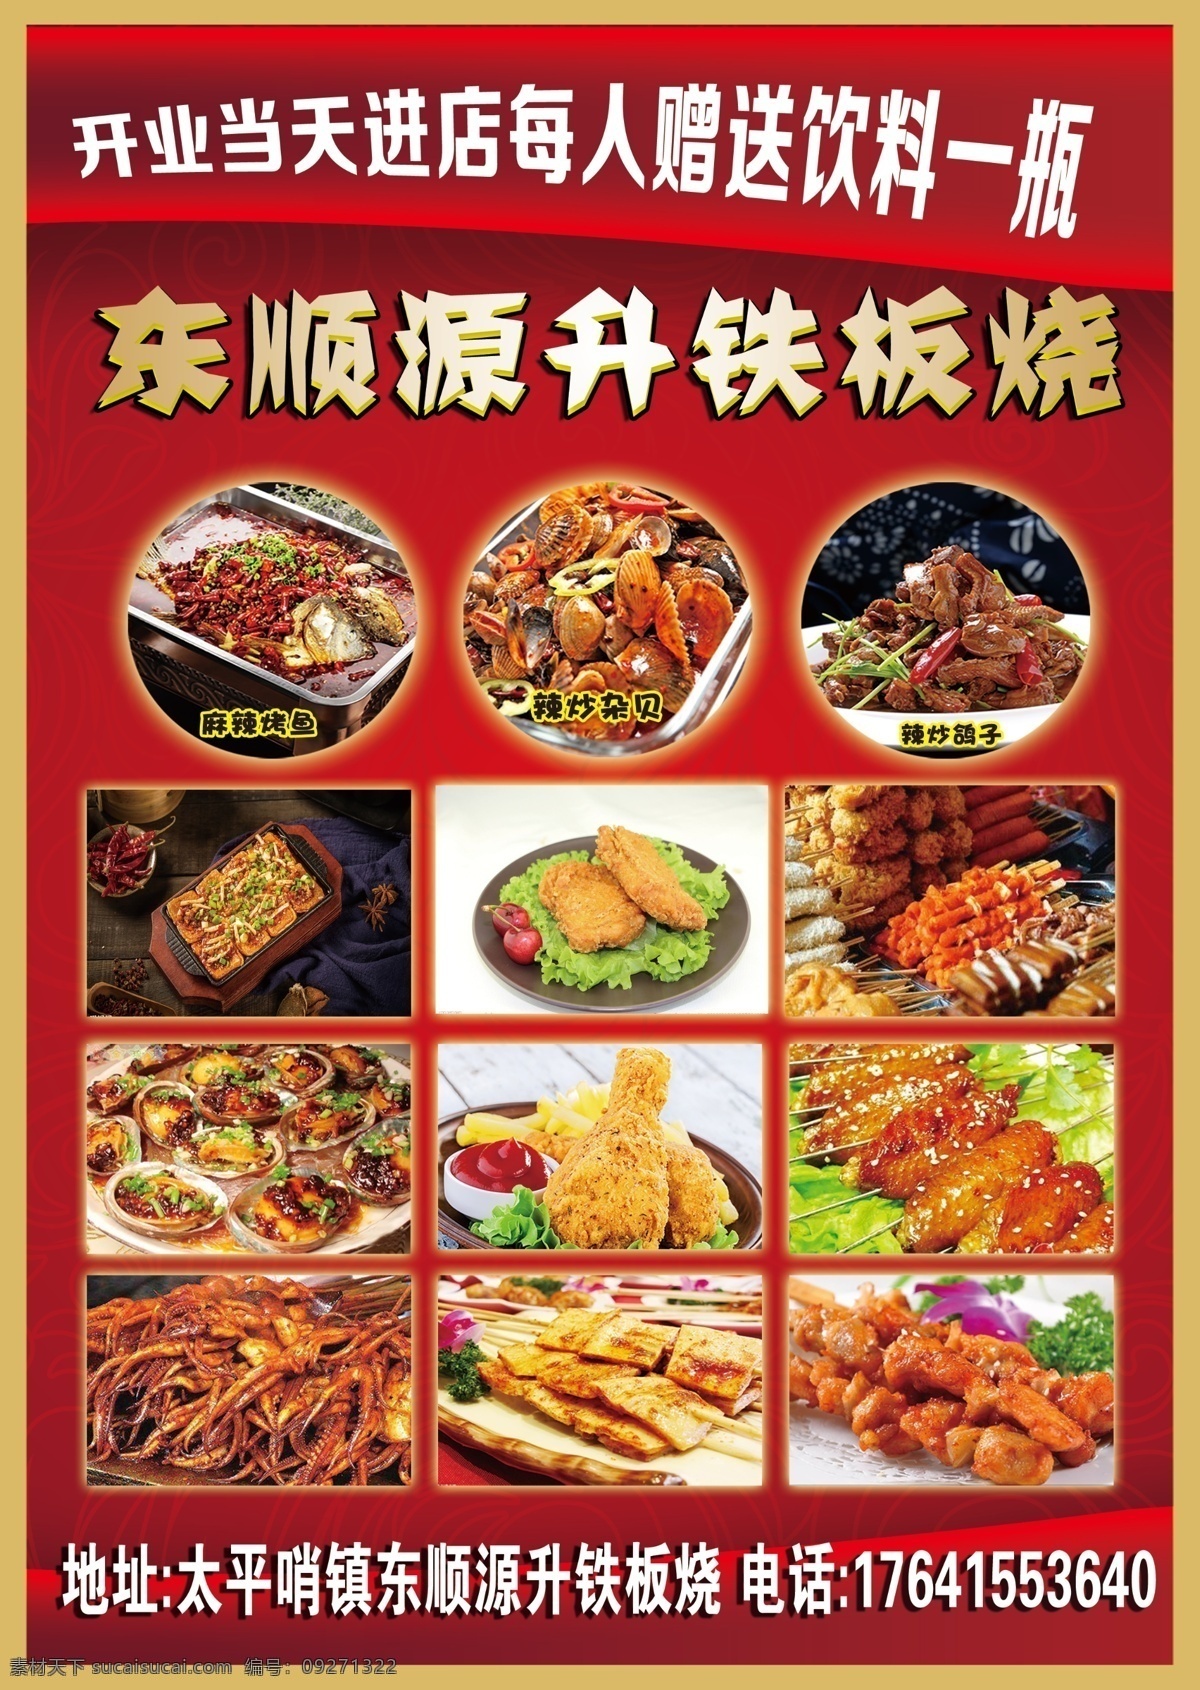 铁板烧传单 传单设计 海报制作 铁板烧宣传 美食照片 餐饮传单